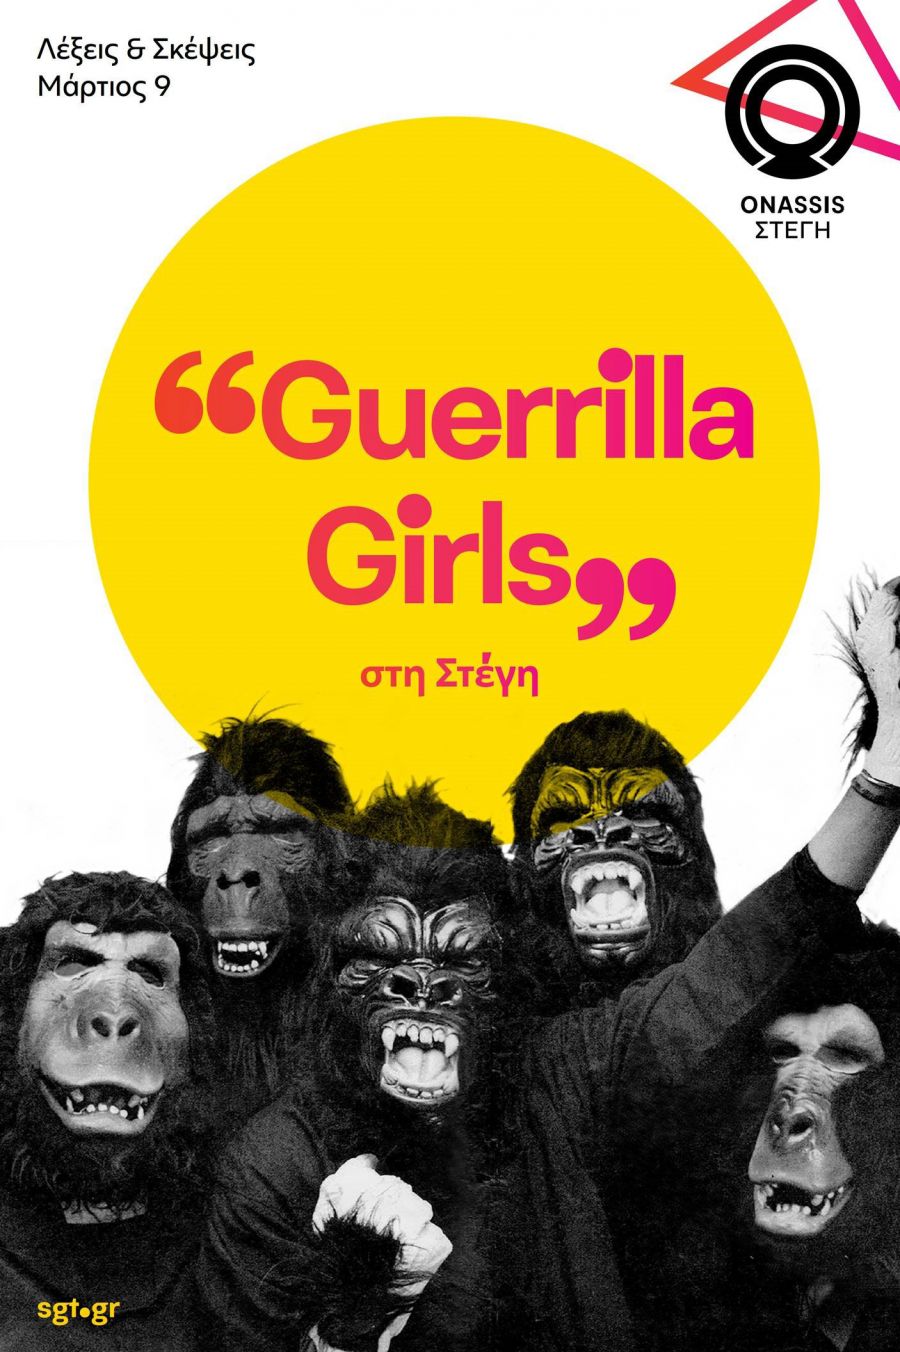 Guerrilla Girls_poster